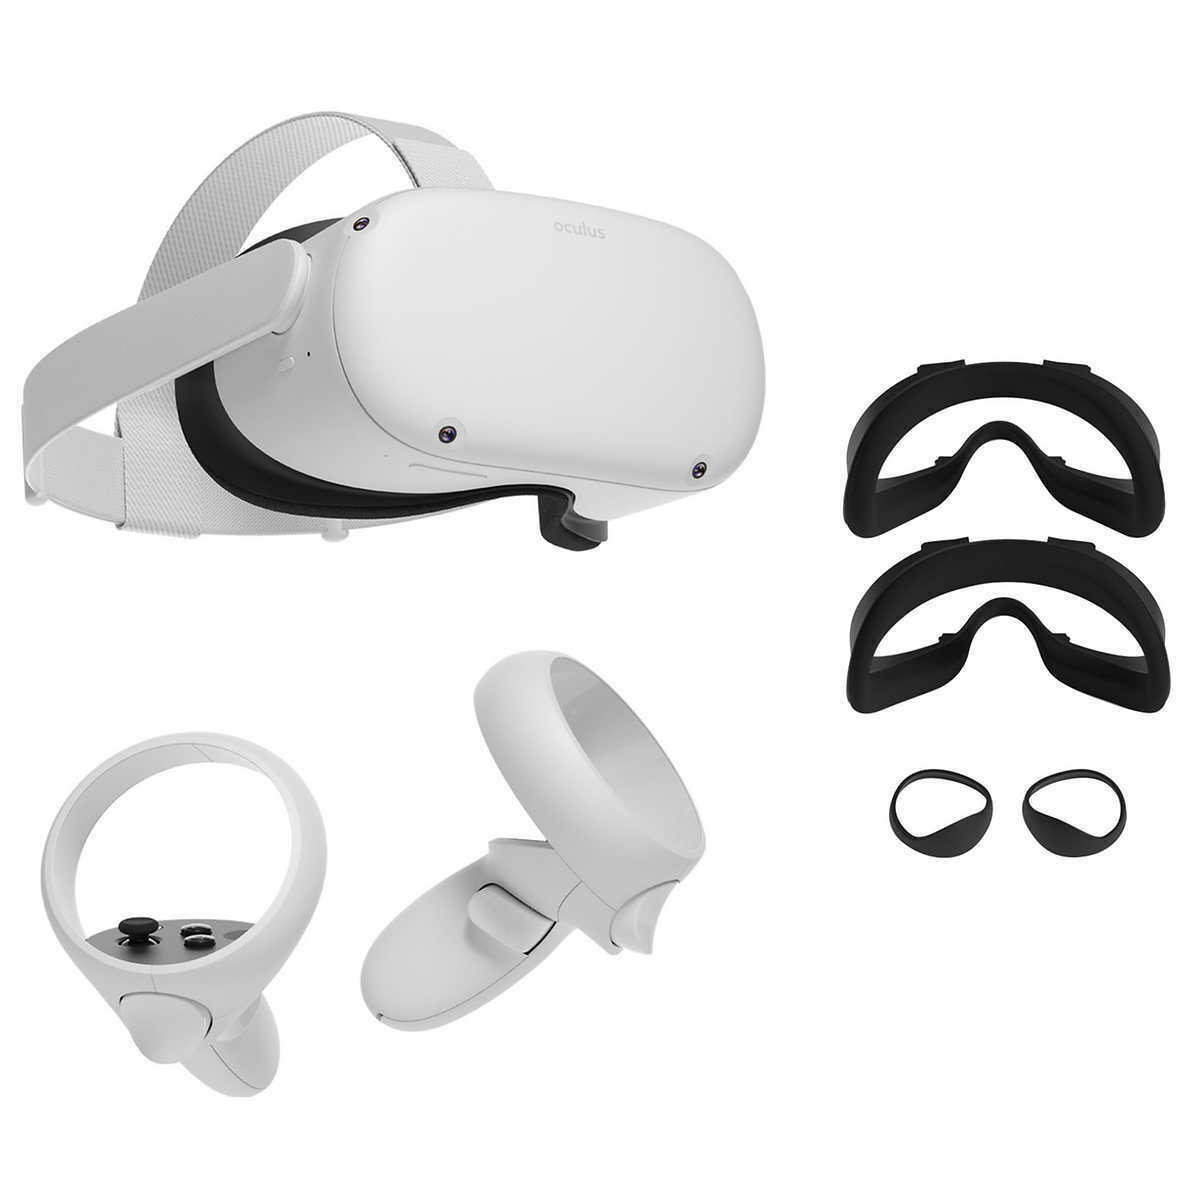 Logitech G333 VR Ecouteurs Gaming pour Oculus Quest 2 Oculus Quest 2 /— Casque de r/éalit/é virtuelle tout-en-un derni/ère g/én/ération /— 64 Go